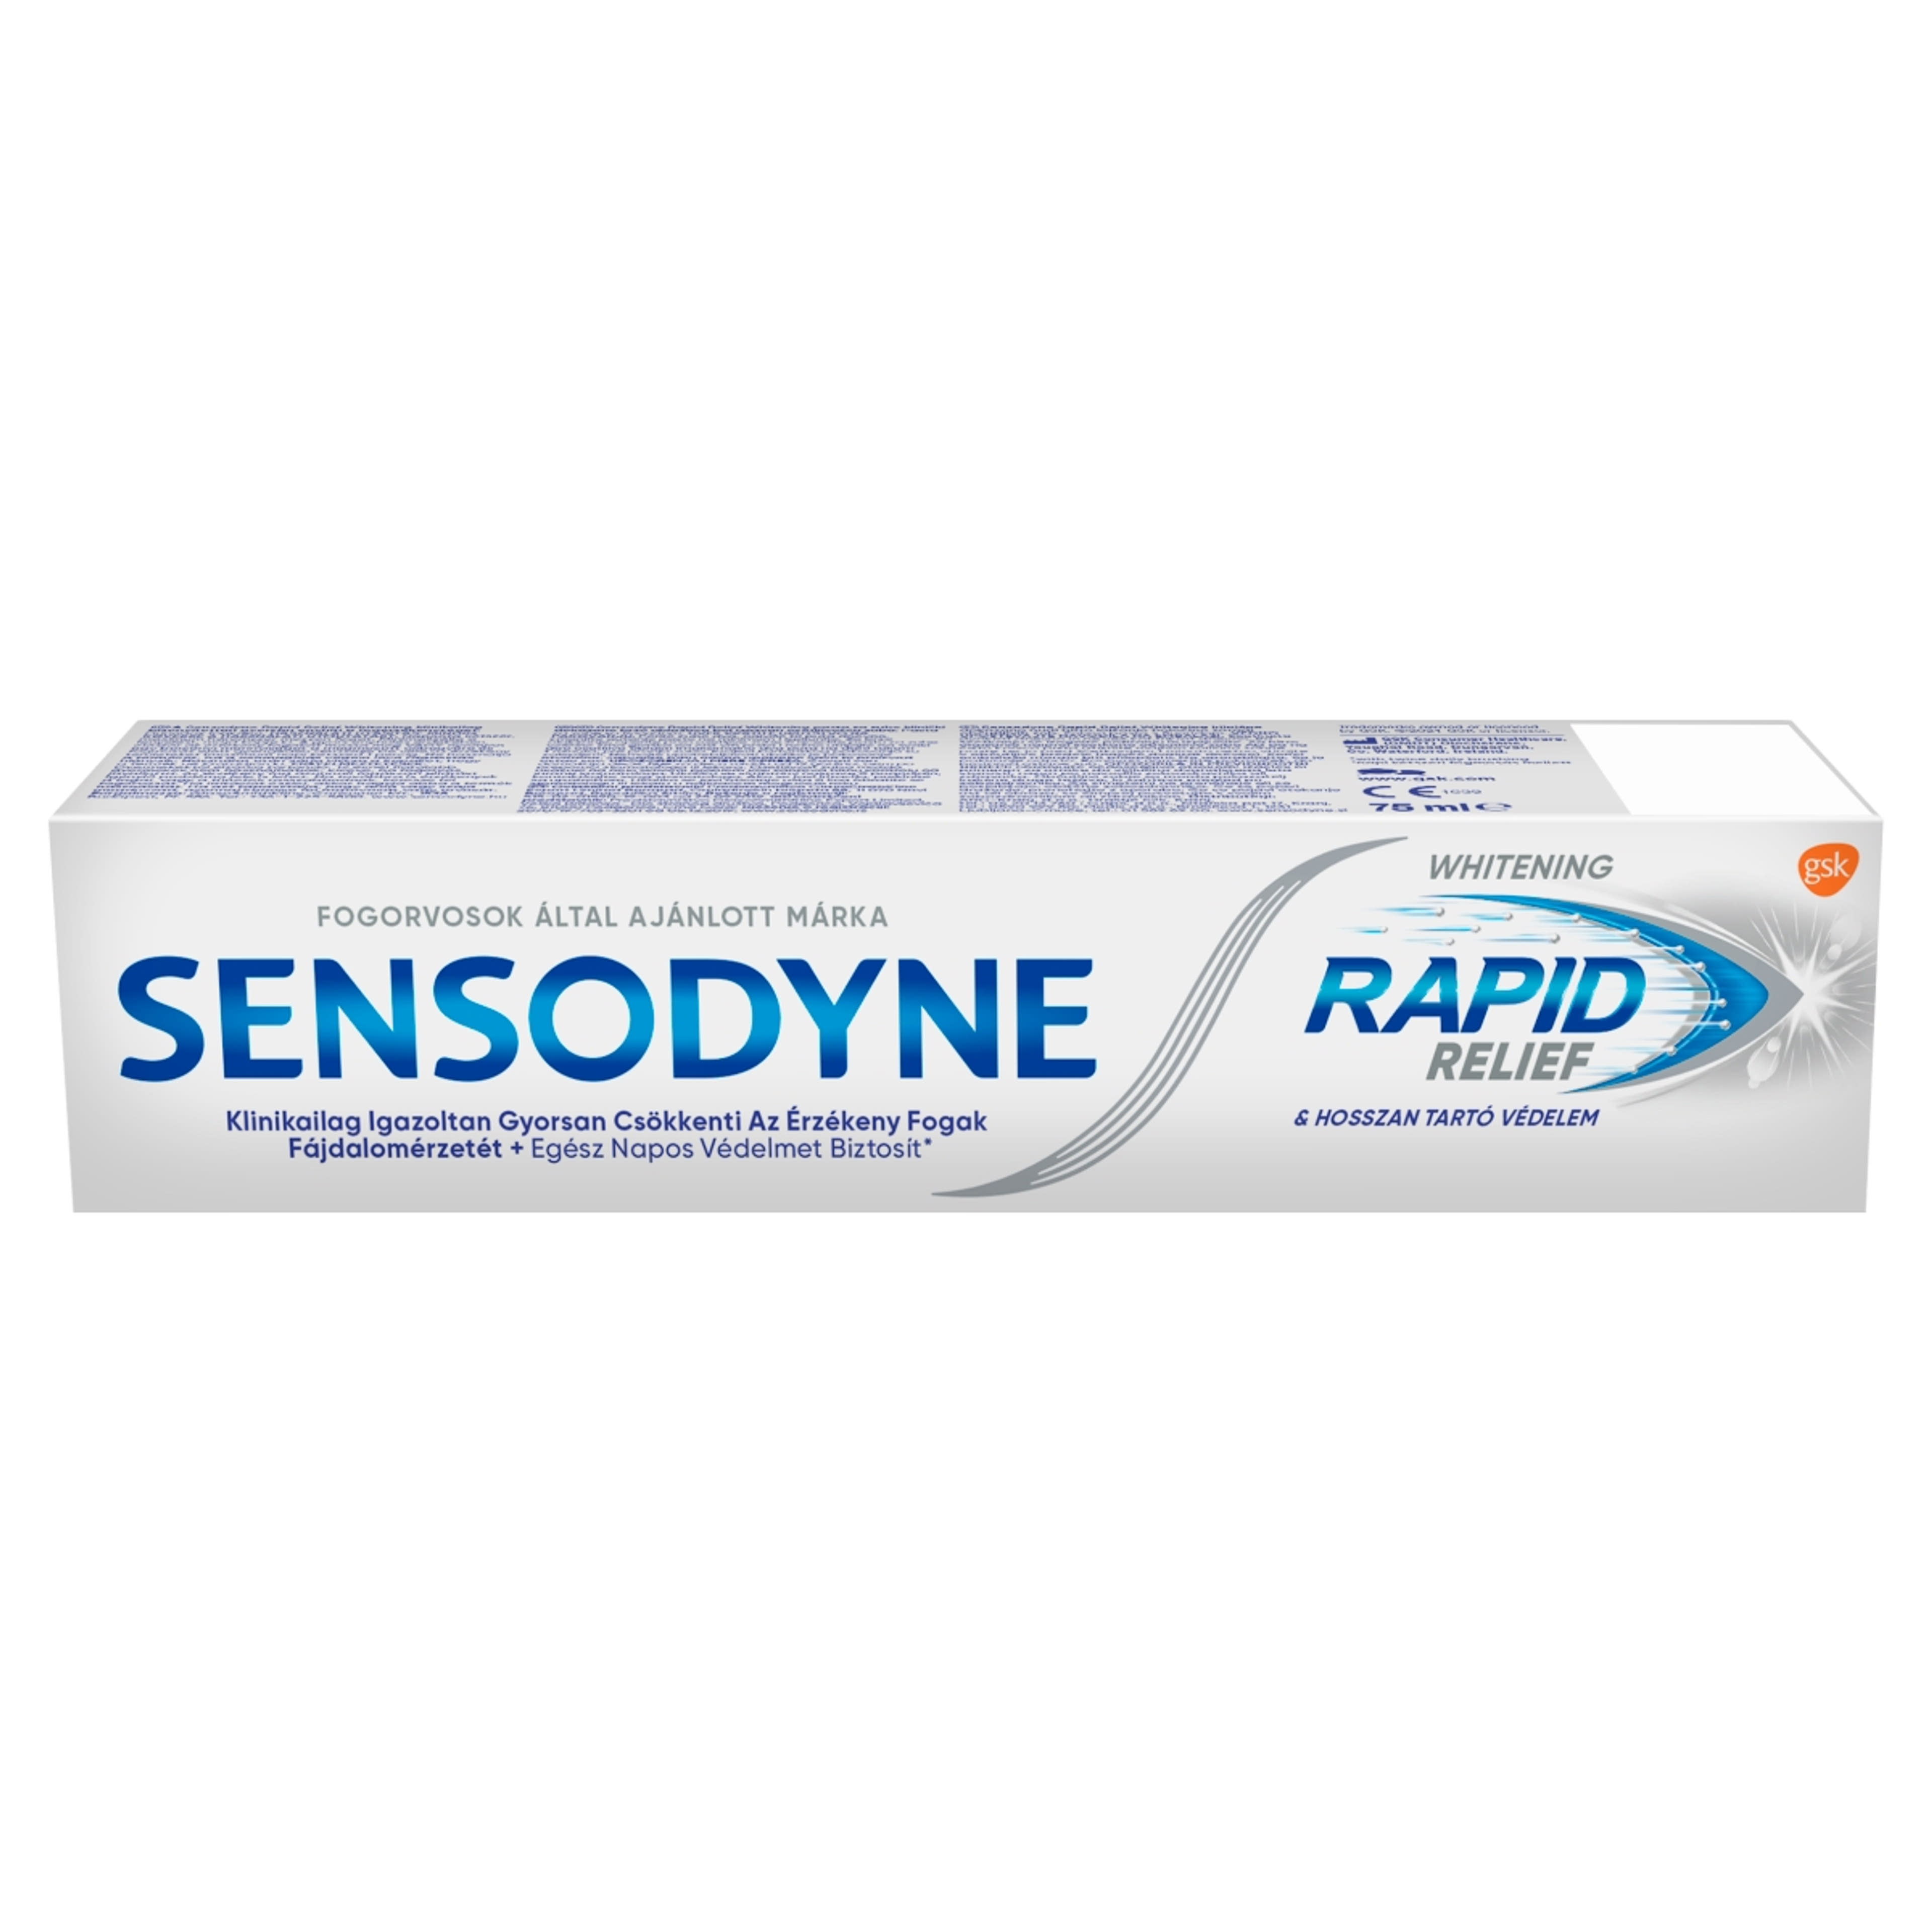 Sensodyne Rapid Whitening fogkrém - 75 ml-1